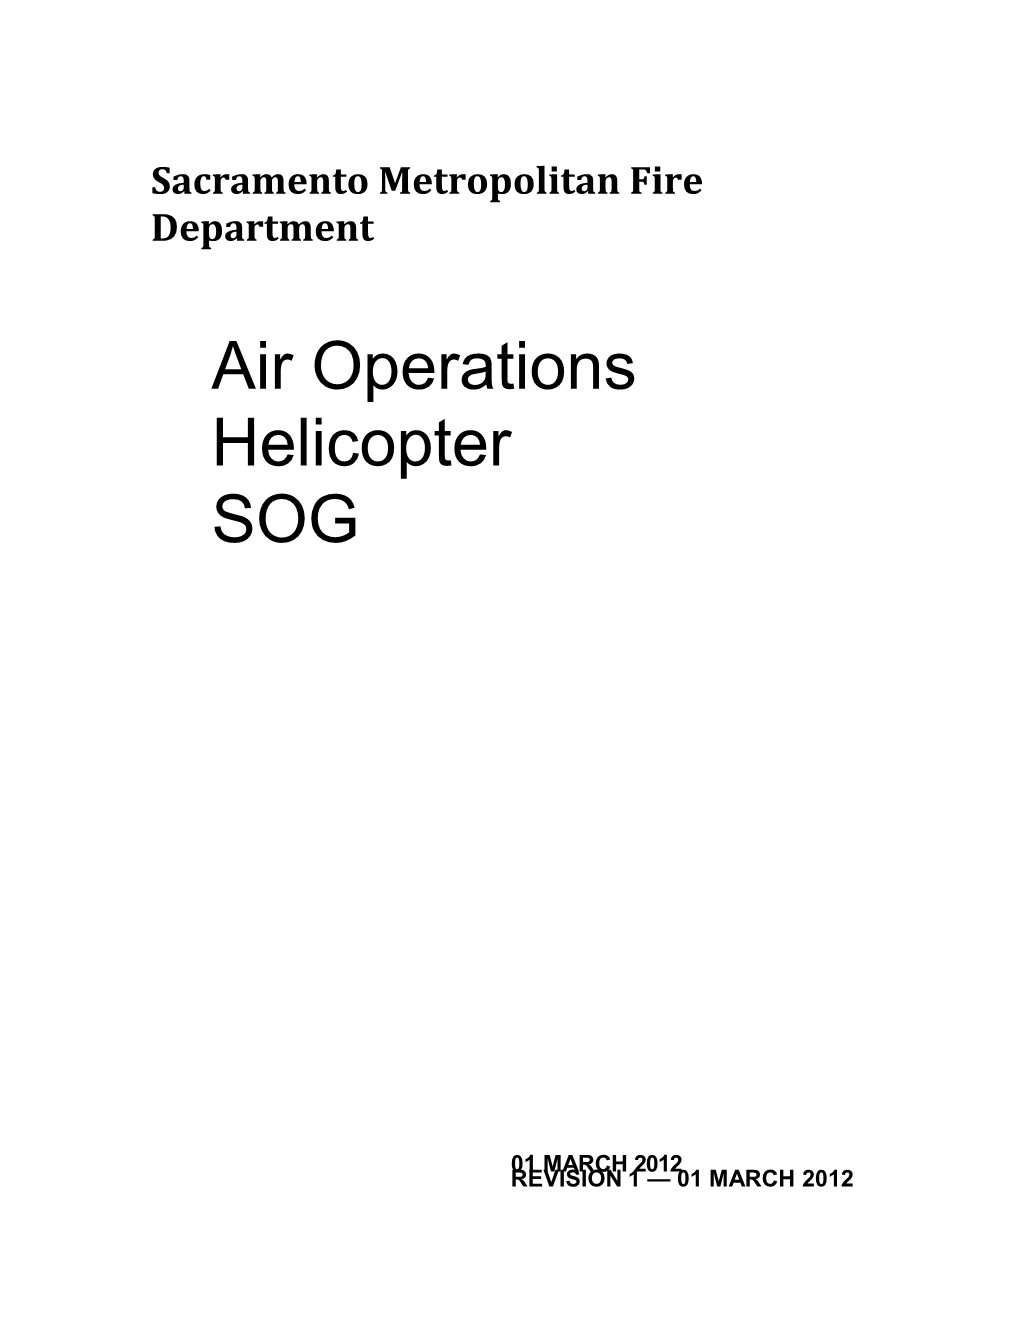 Sacramento Metropolitan Fire Department